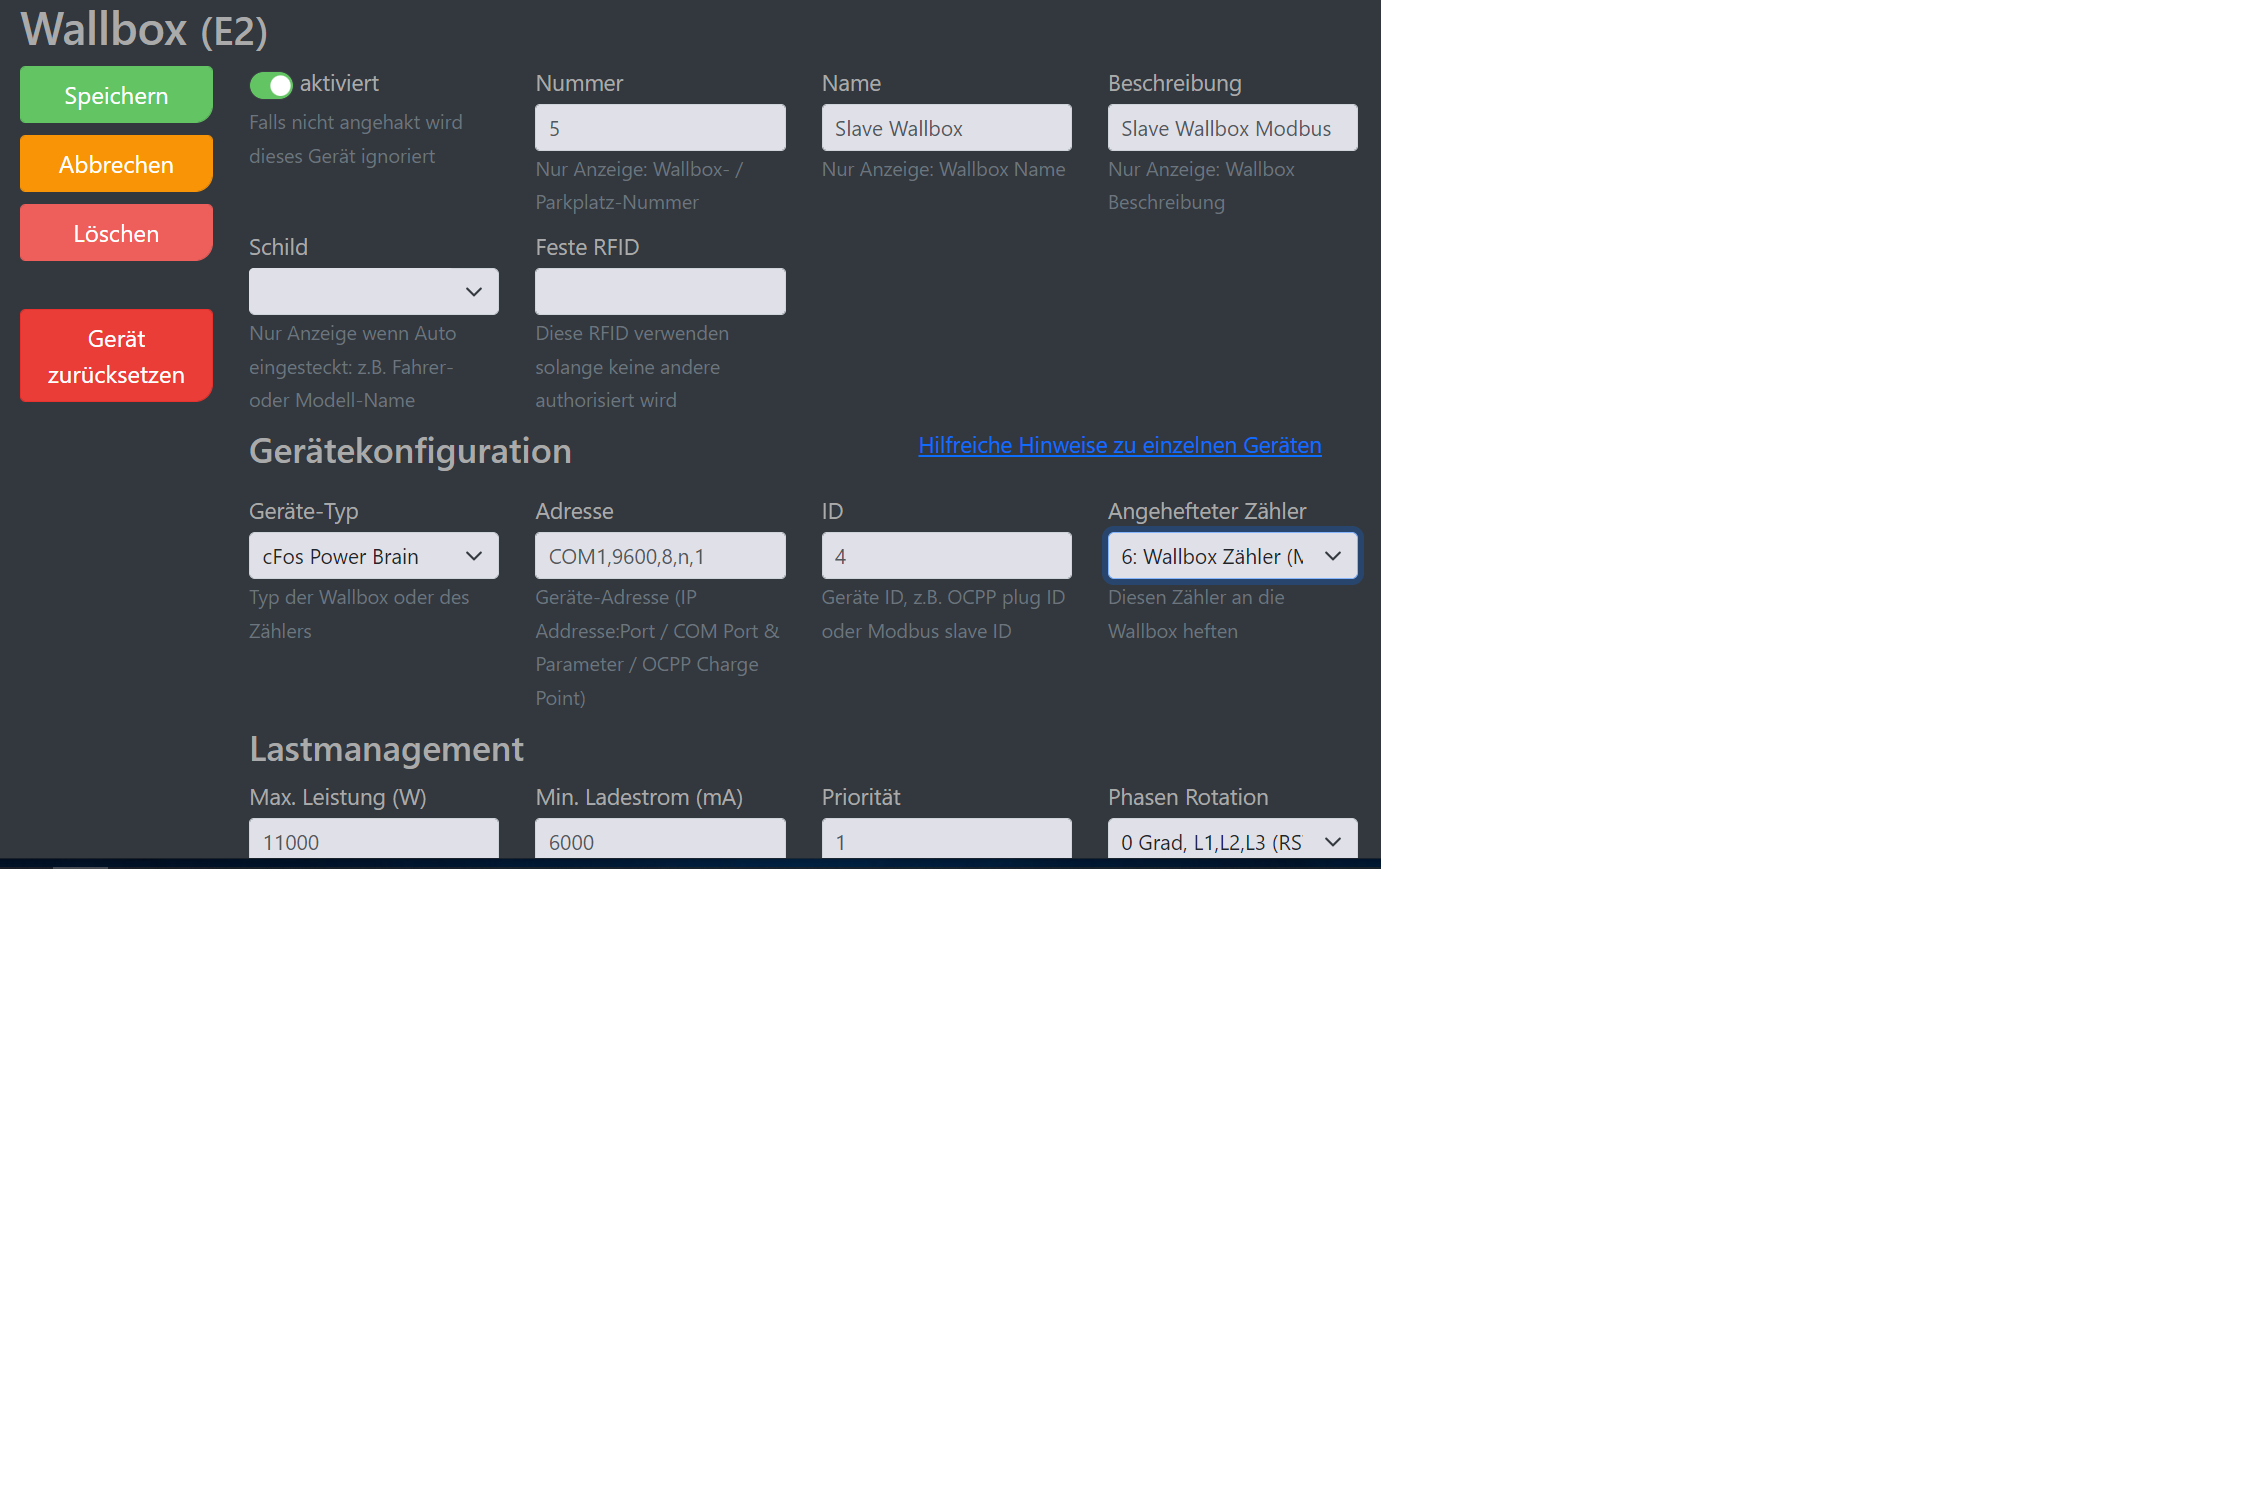 Img Captura de pantalla de la configuración del gestor de carga cFos